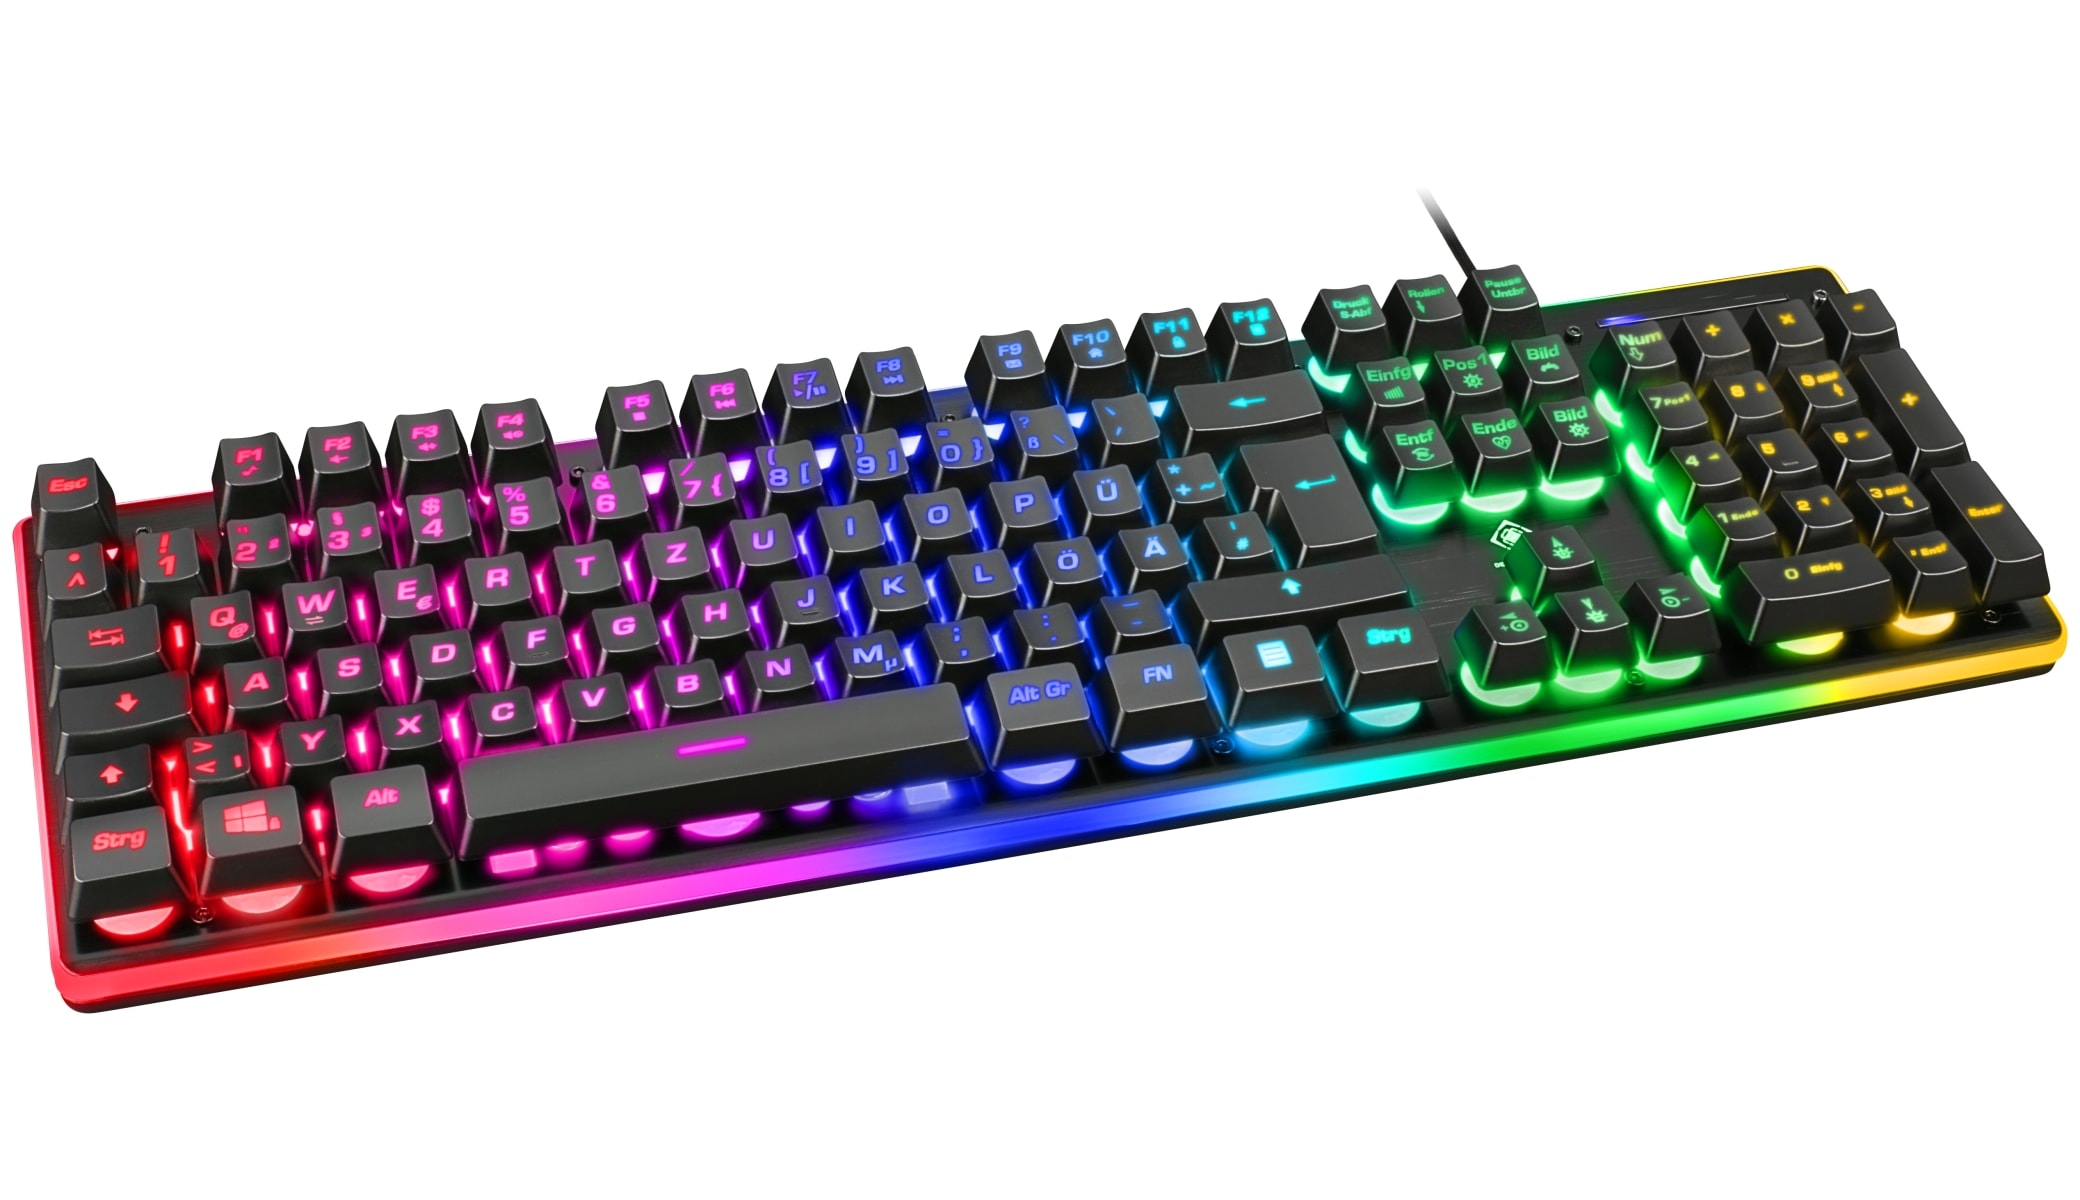 DELTACO GAMING Tastatur mit RGB Hintergrundbeleuchtung